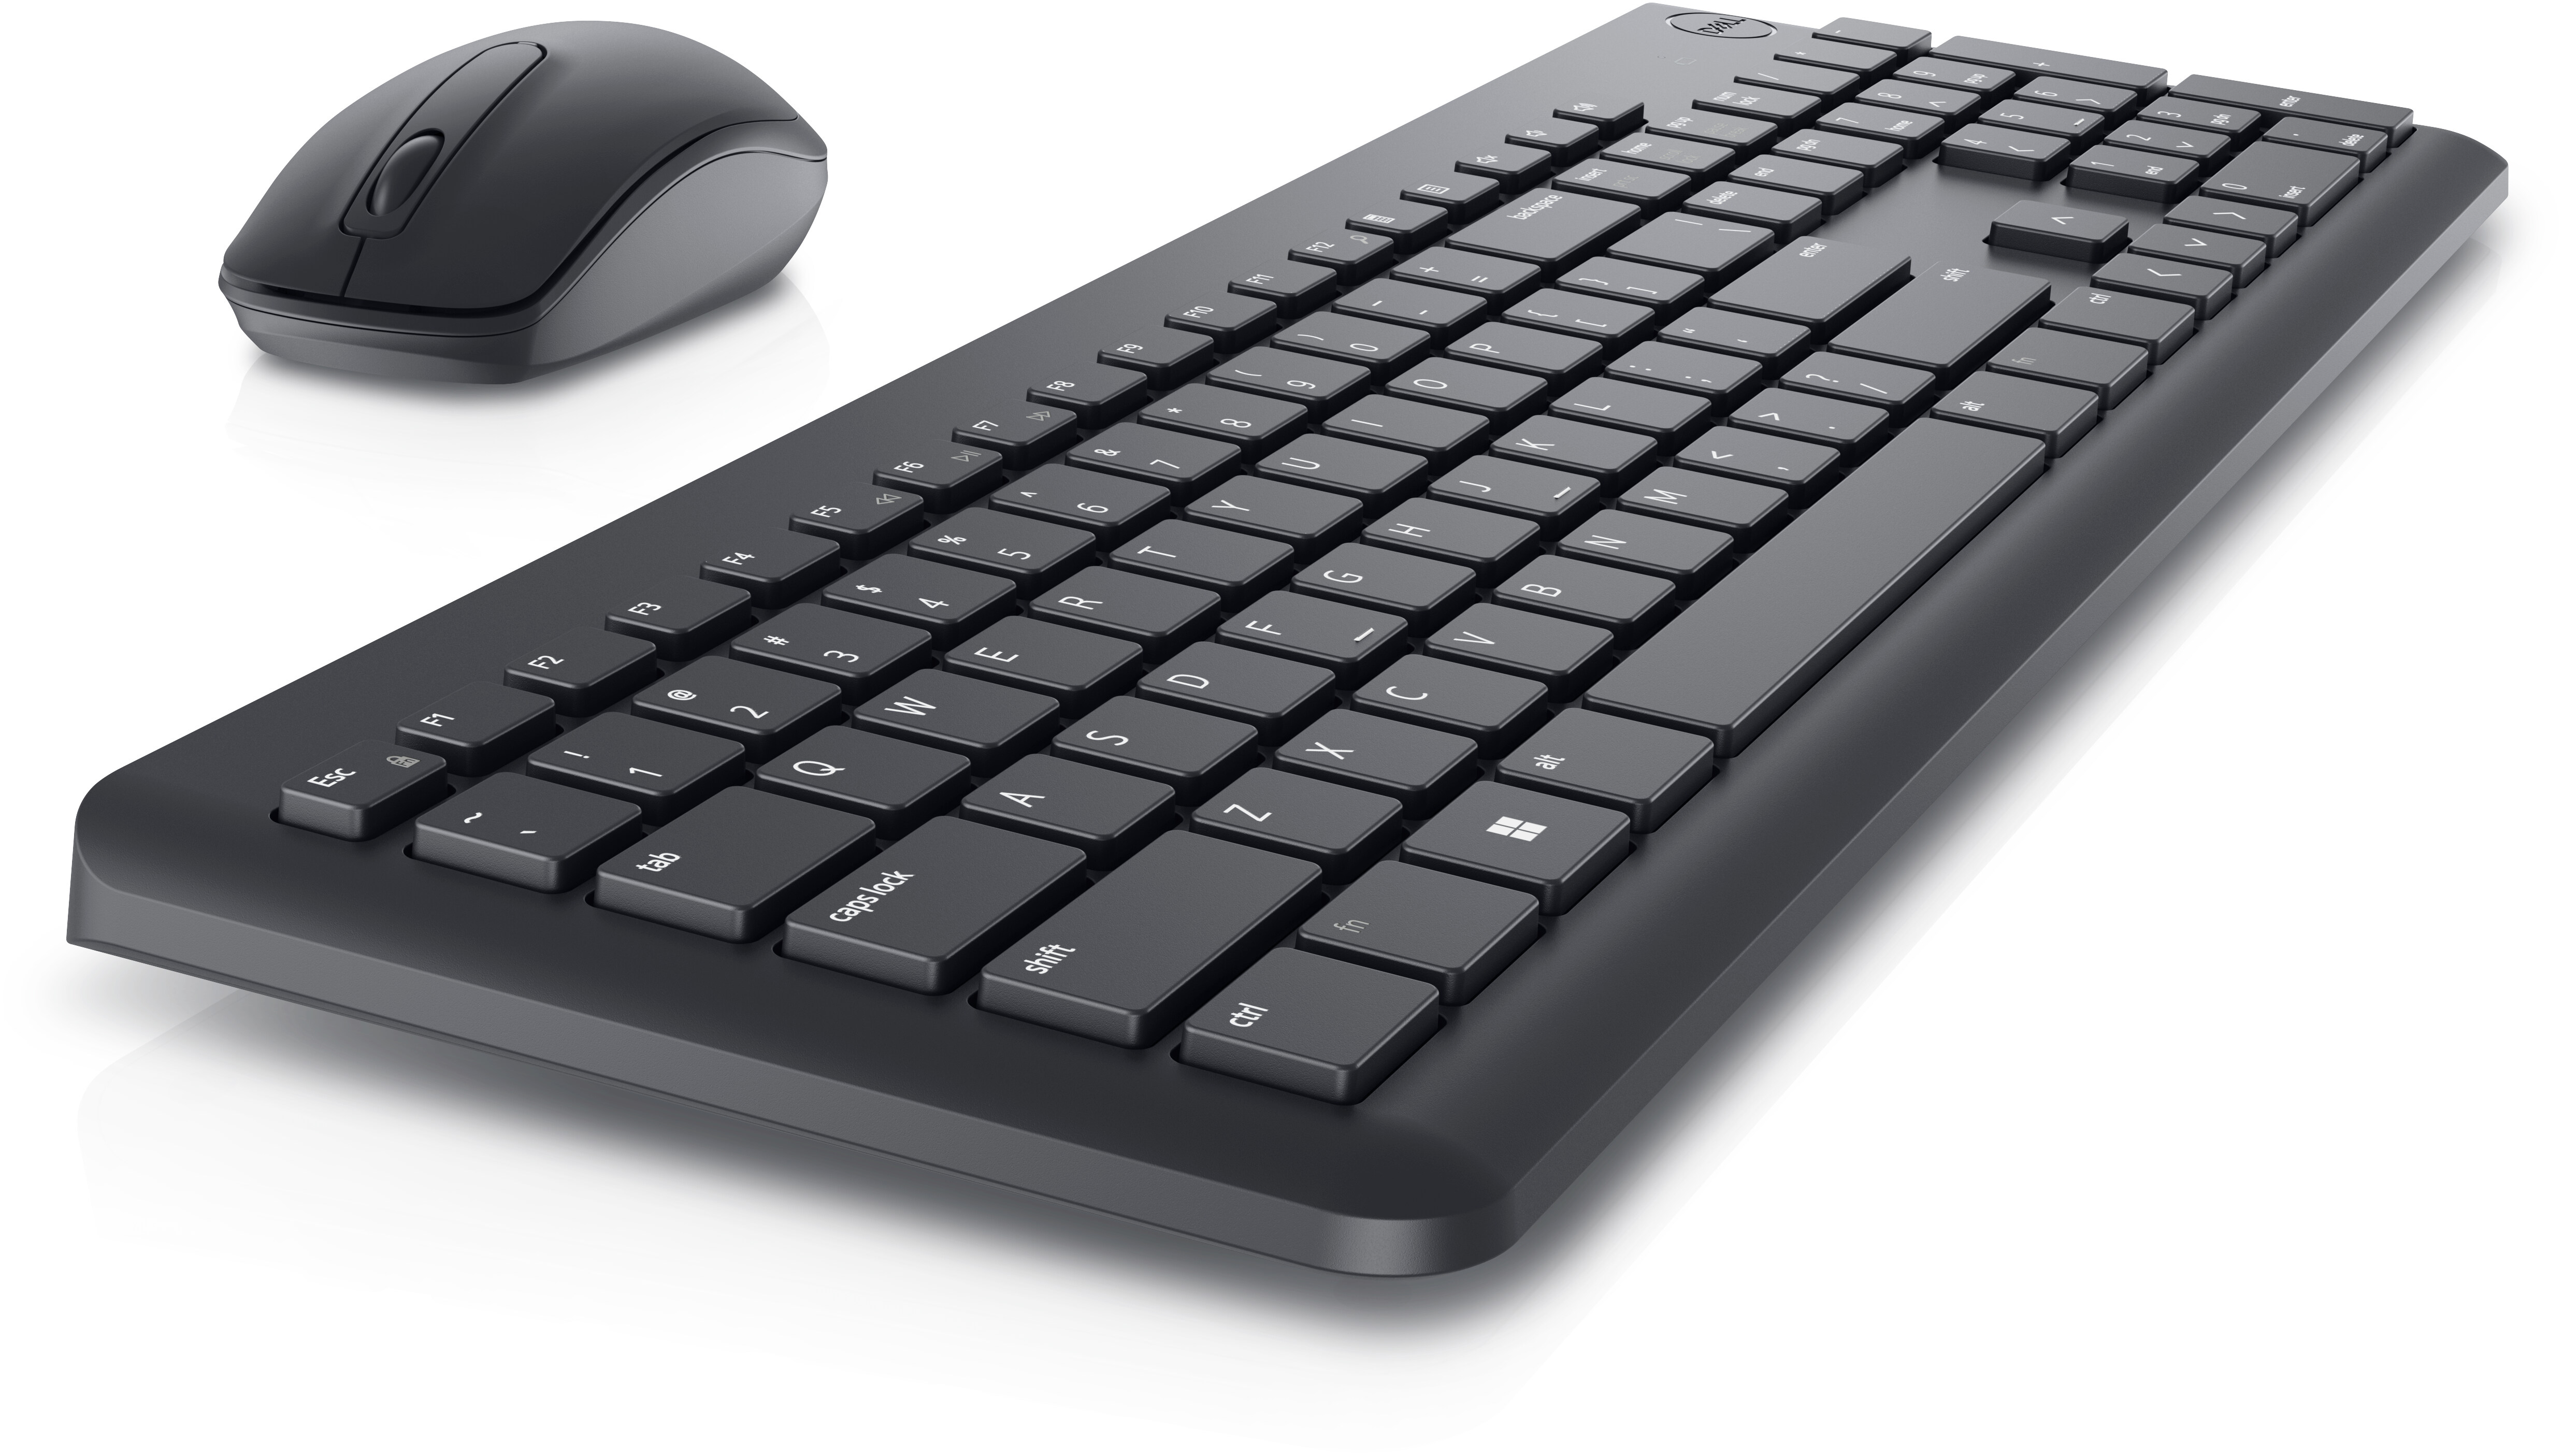 Pack clavier / souris sans fil - Dell KM636 - AZERTY - LaptopService